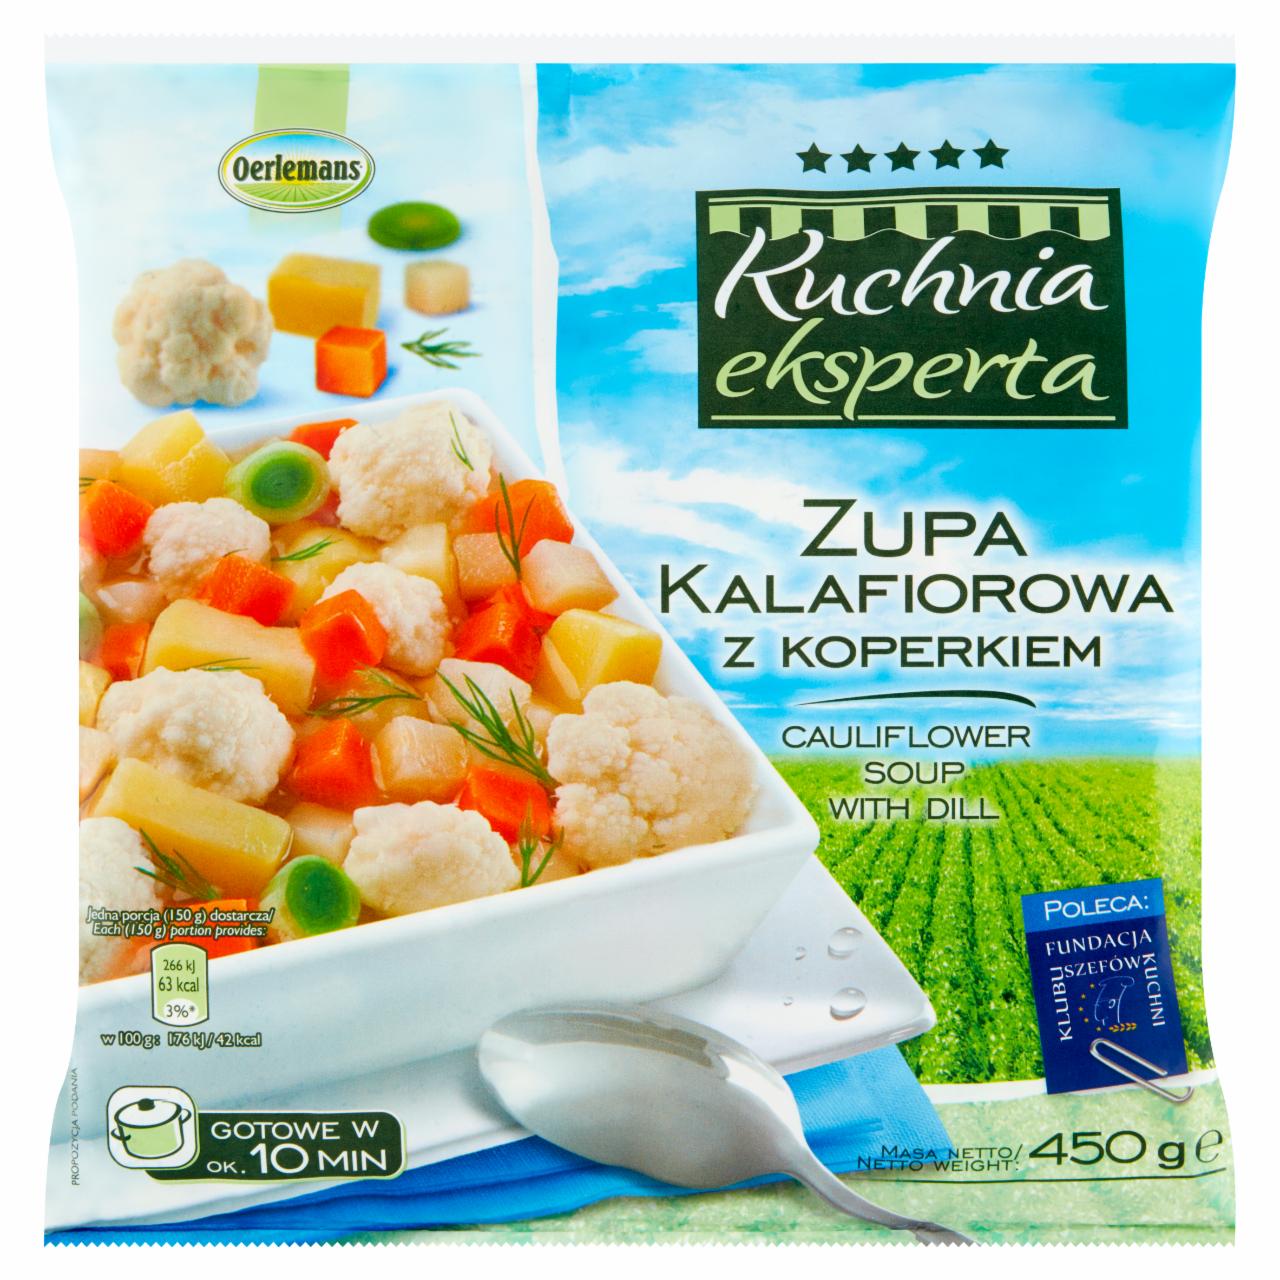 Zdjęcia - Oerlemans Kuchnia eksperta Zupa kalafiorowa z koperkiem 450 g